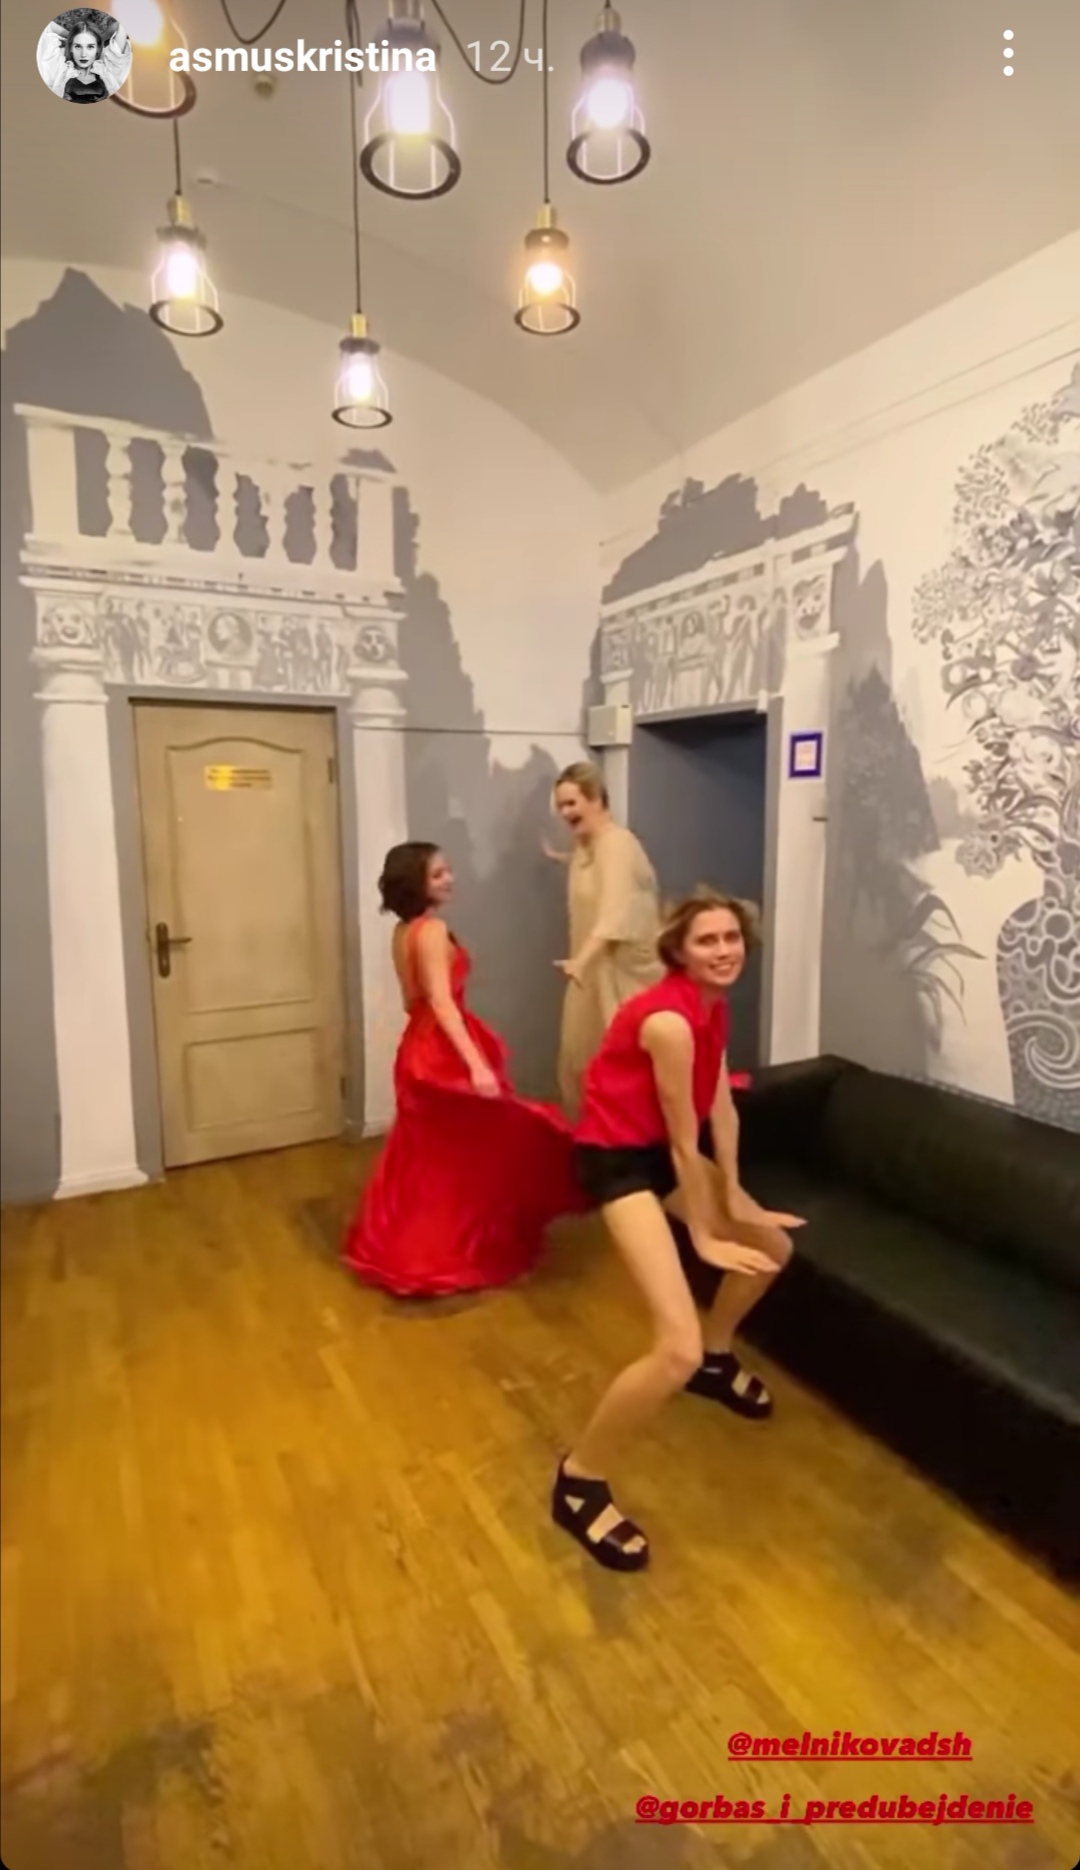 Дарья Мельникова поразила худобой, исполнив нелепый танец с Кристиной Асмус